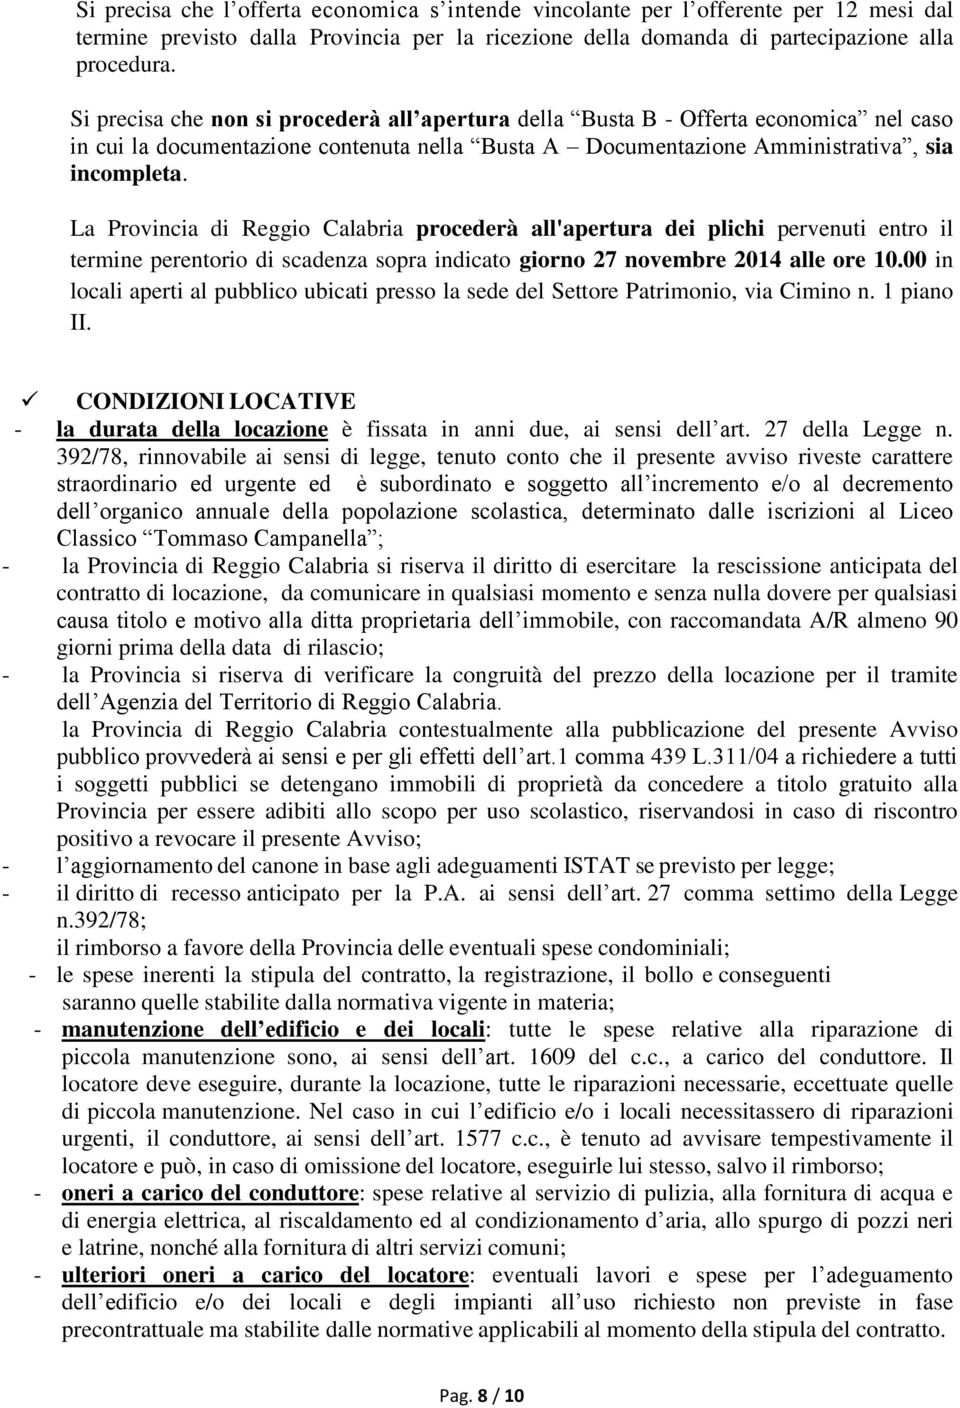 La Provincia di Reggio Calabria procederà all'apertura dei plichi pervenuti entro il termine perentorio di scadenza sopra indicato giorno 27 novembre 2014 alle ore 10.